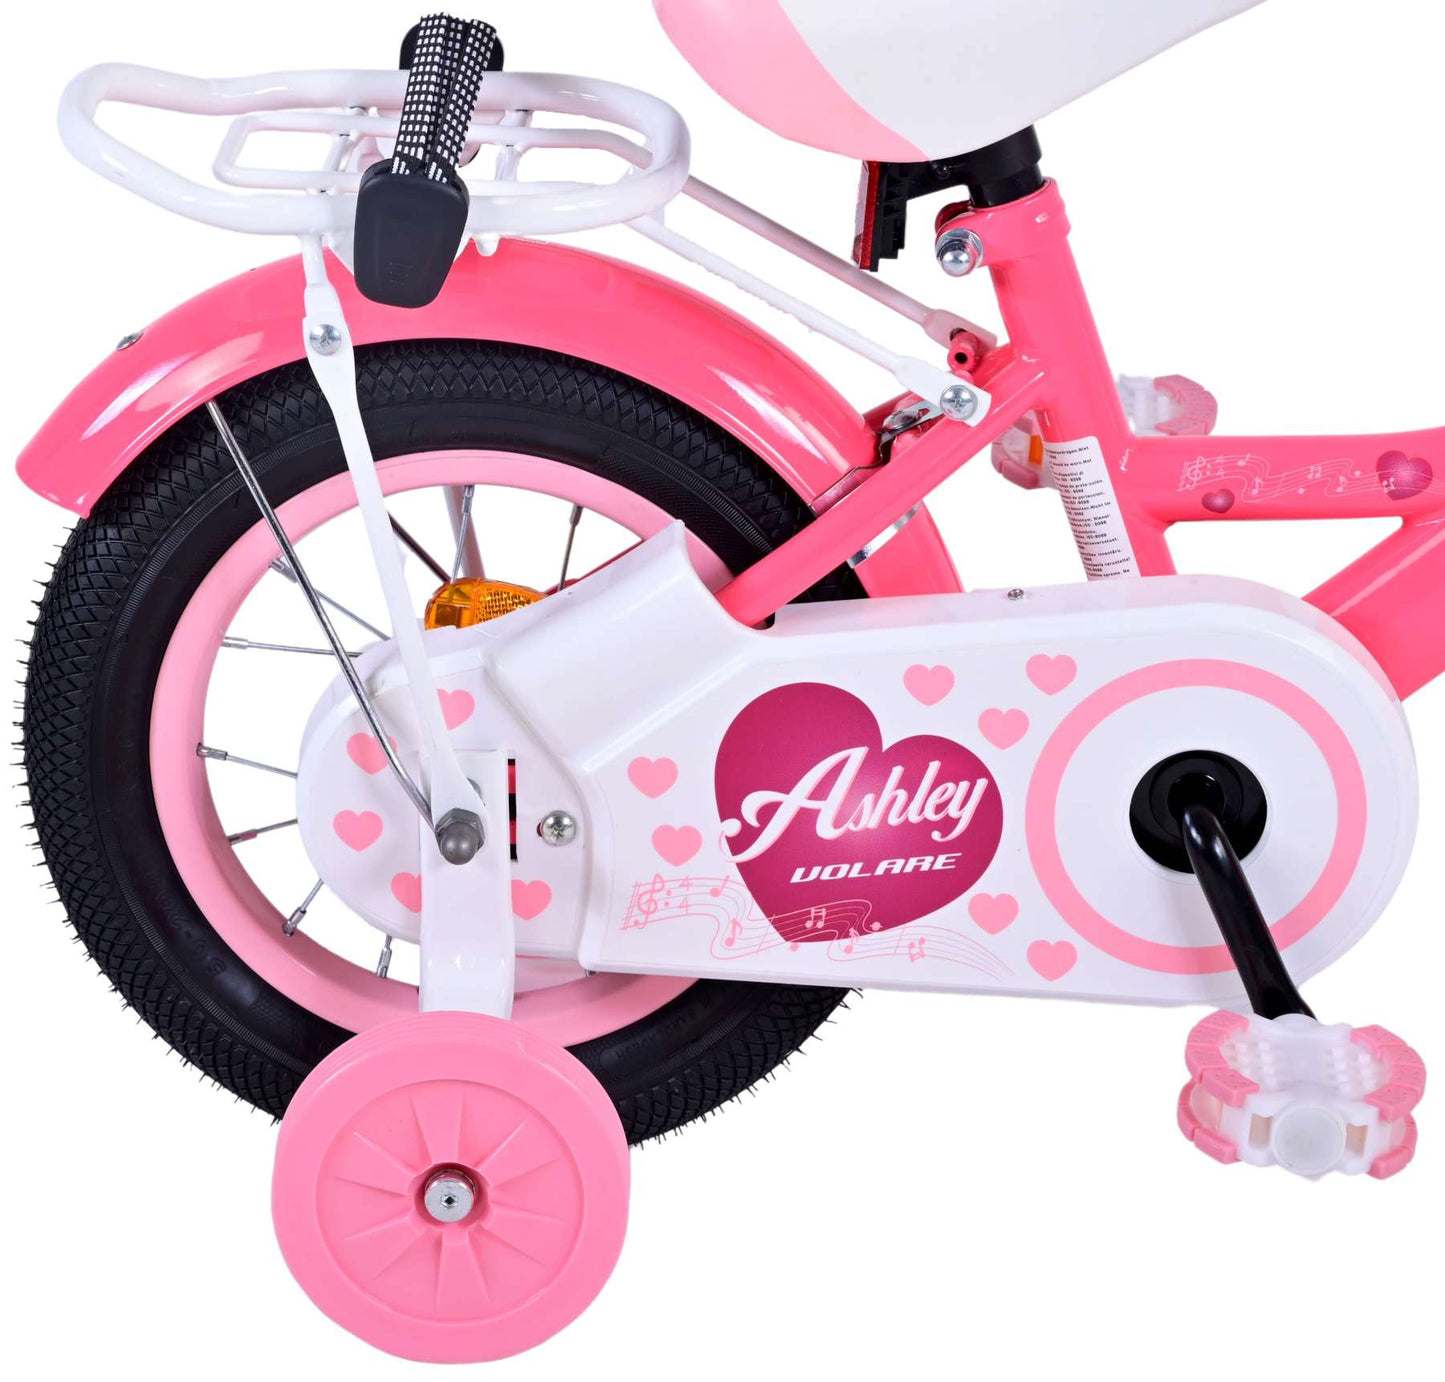 Bicycle per bambini di Vlatare Ashley - Girls - 12 pollici - rosa rosso